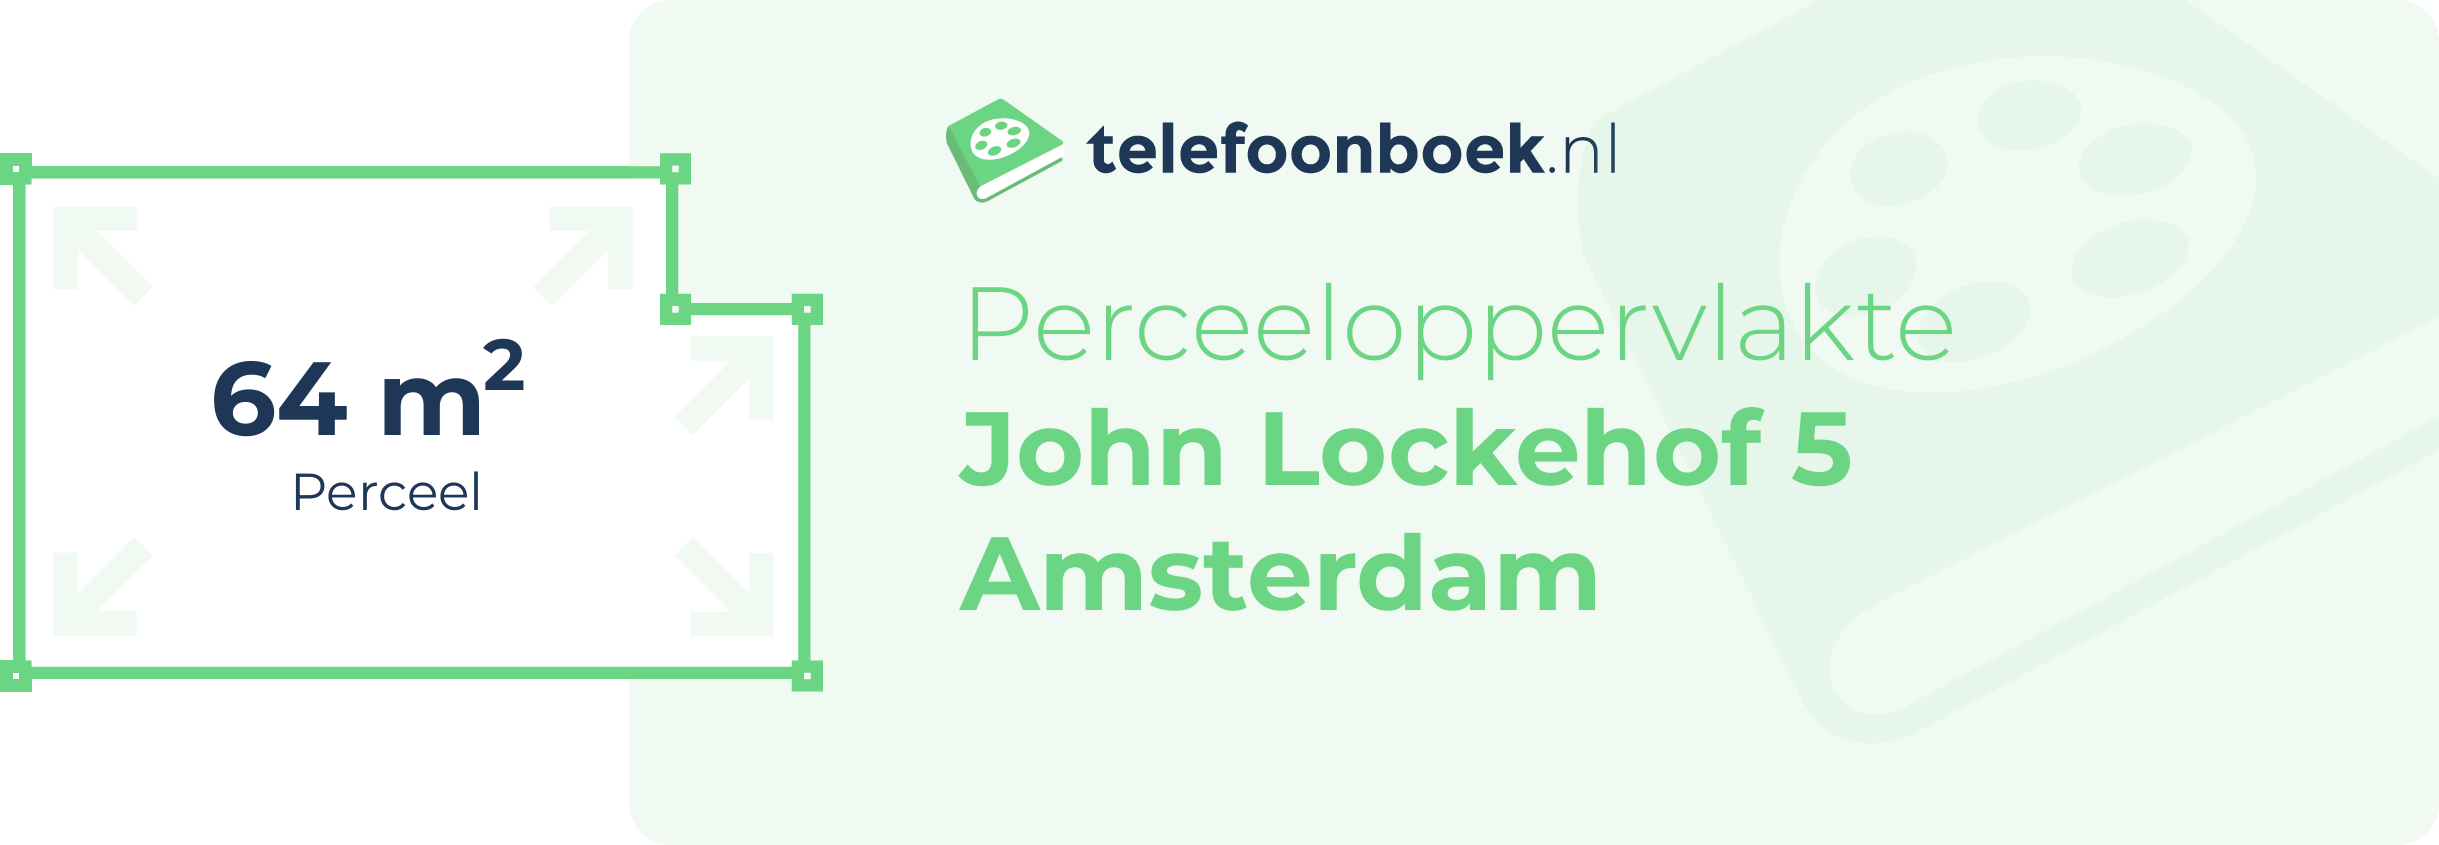 Perceeloppervlakte John Lockehof 5 Amsterdam